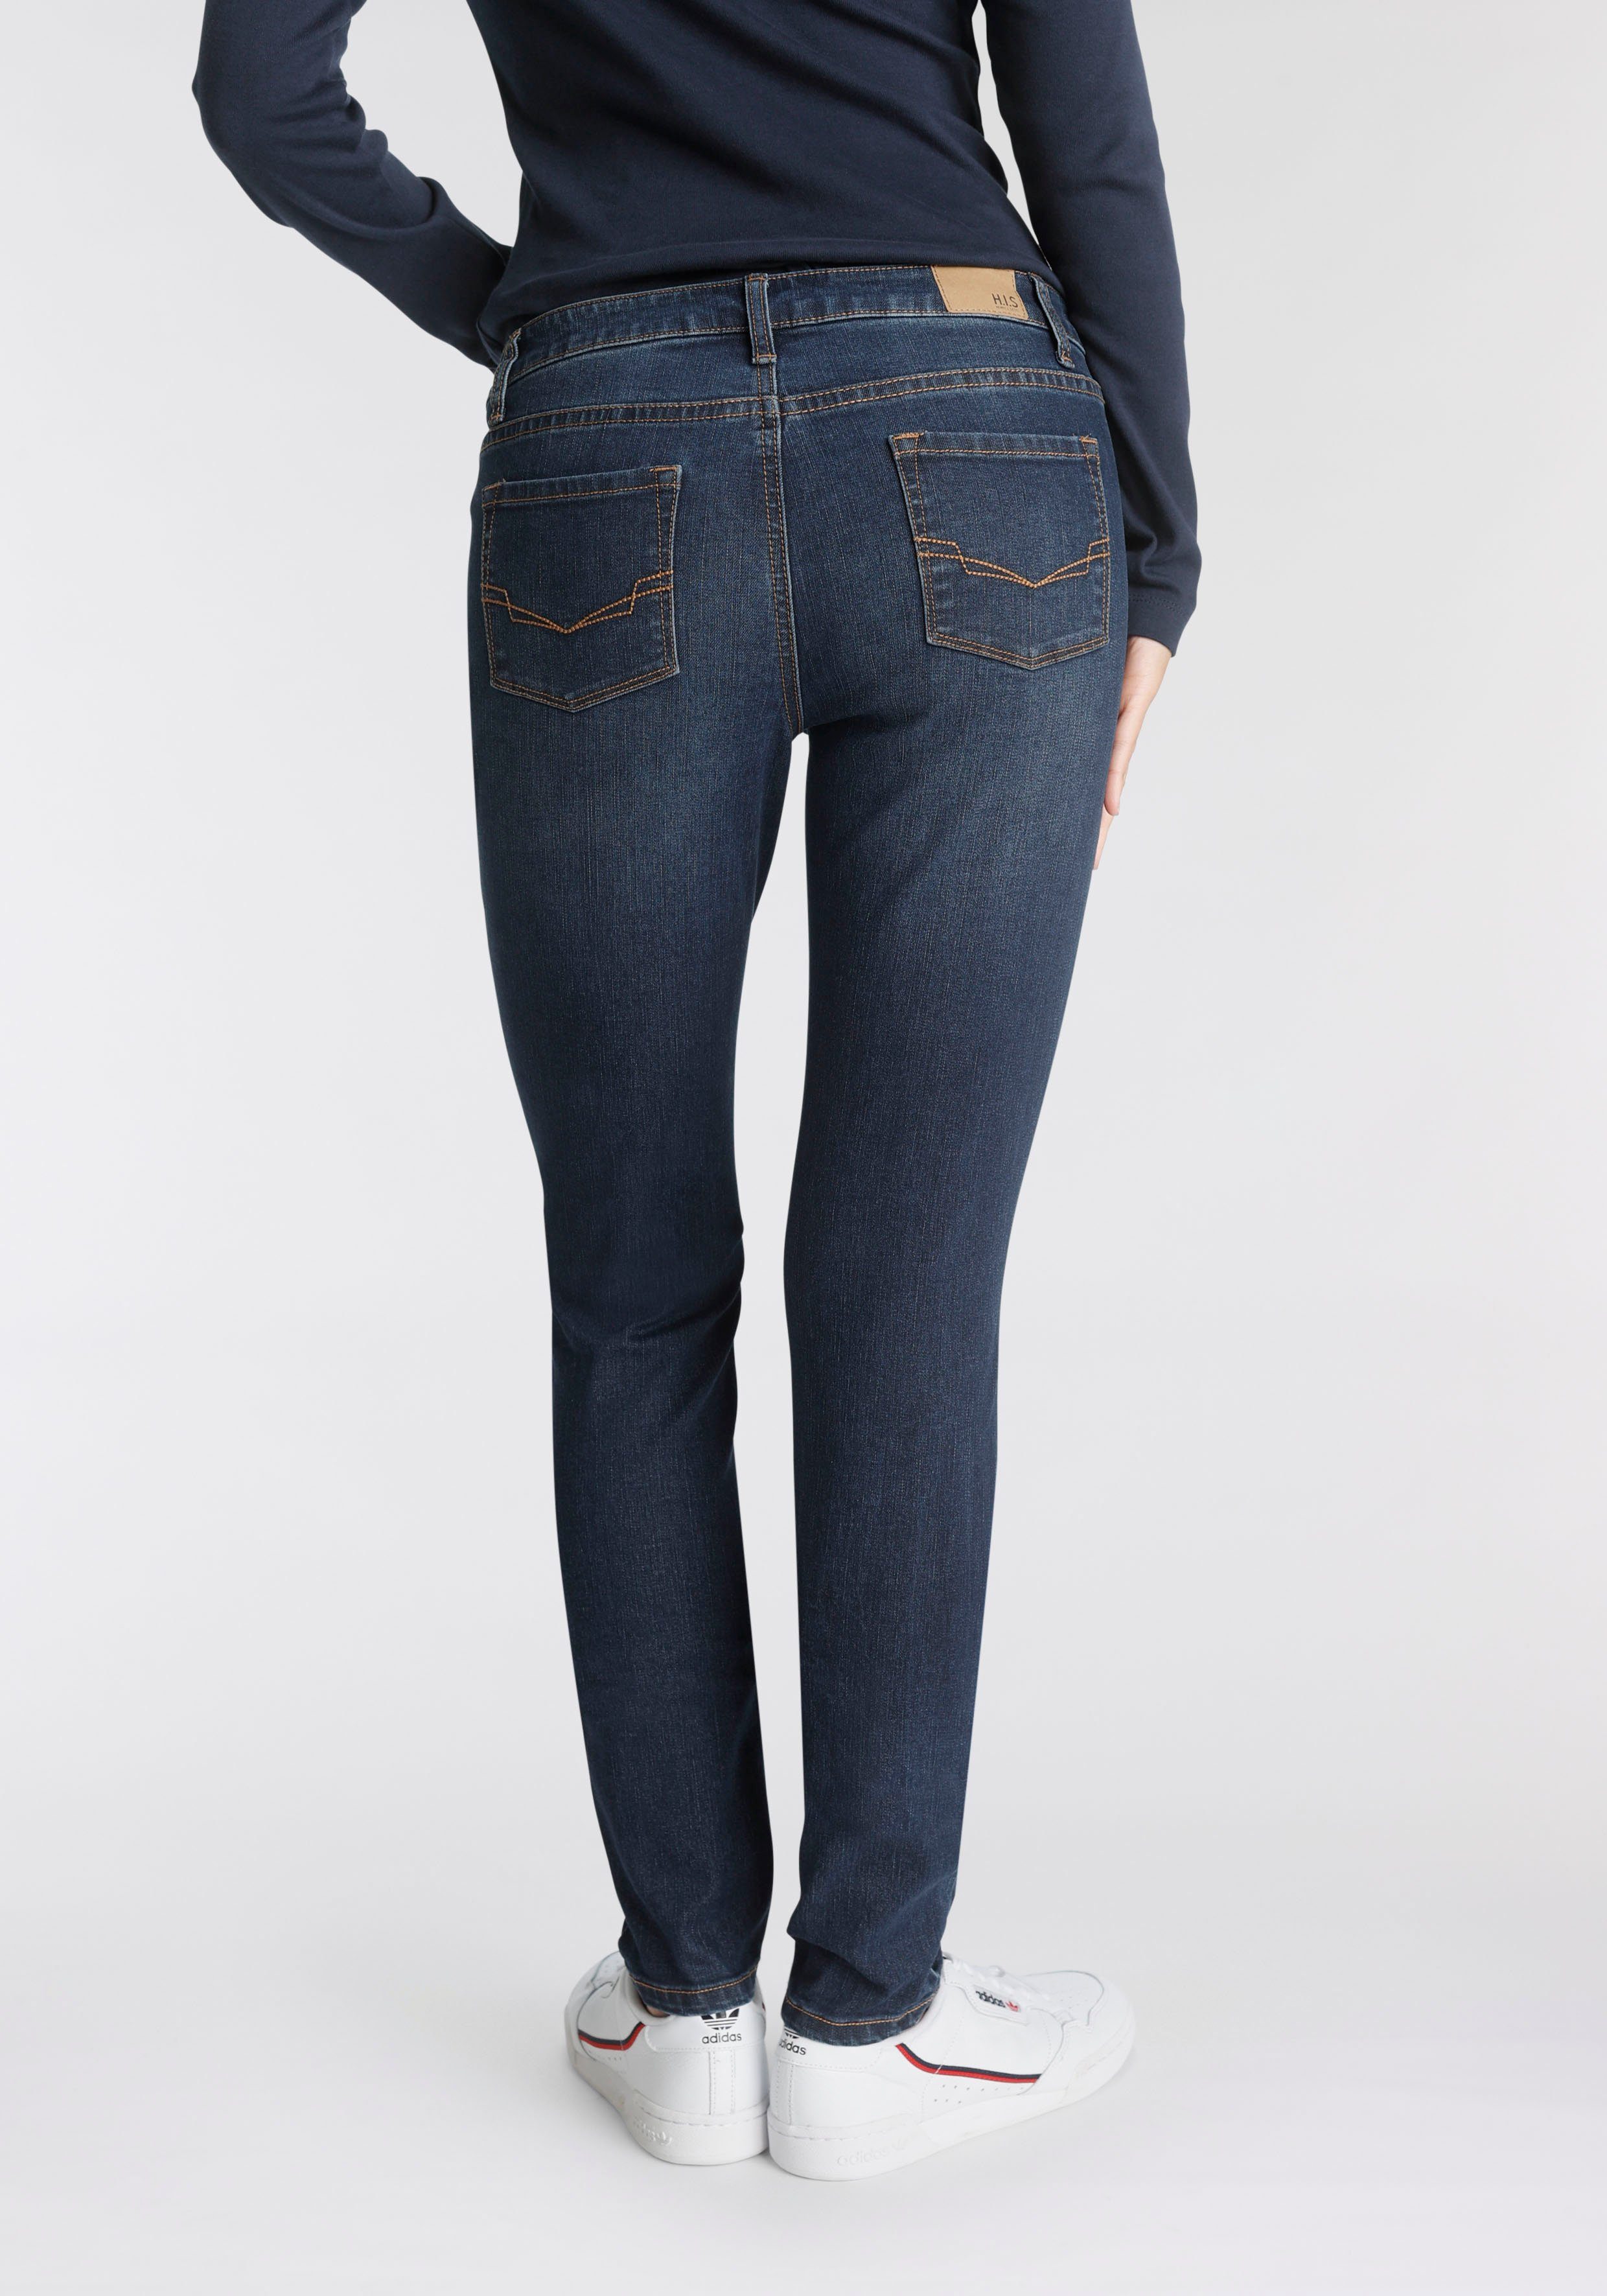 H.I.S Slim-fit-Jeans NEW SLIM FIT REGULAR WAIST Ökologische, wassersparende  Produktion durch OZON WASH | Stretchjeans